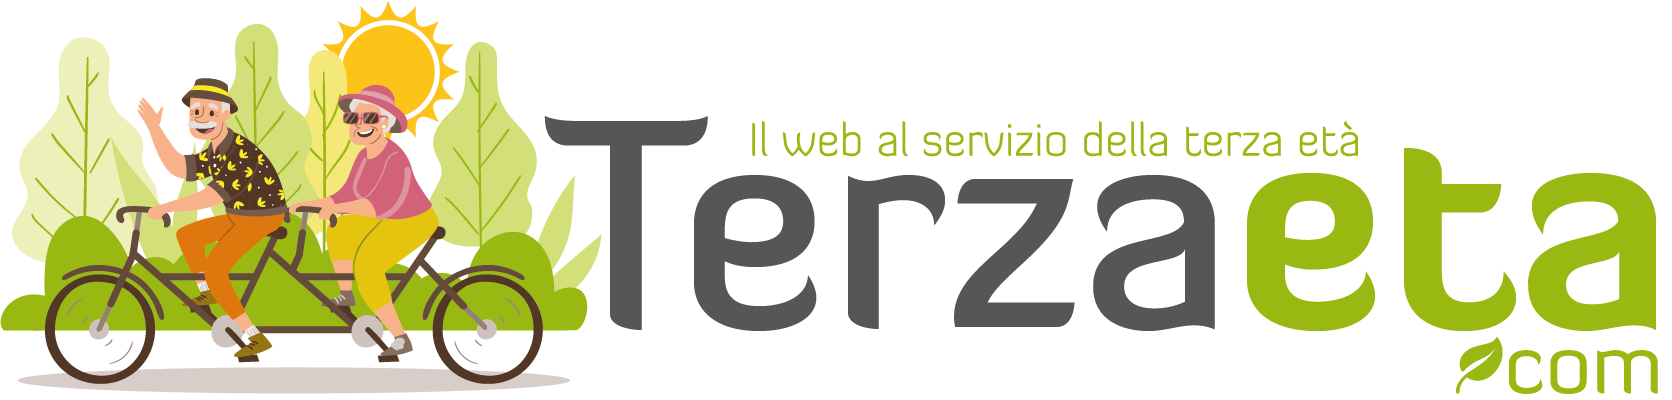 Terzaeta.com - Il Web al servizio della terza età